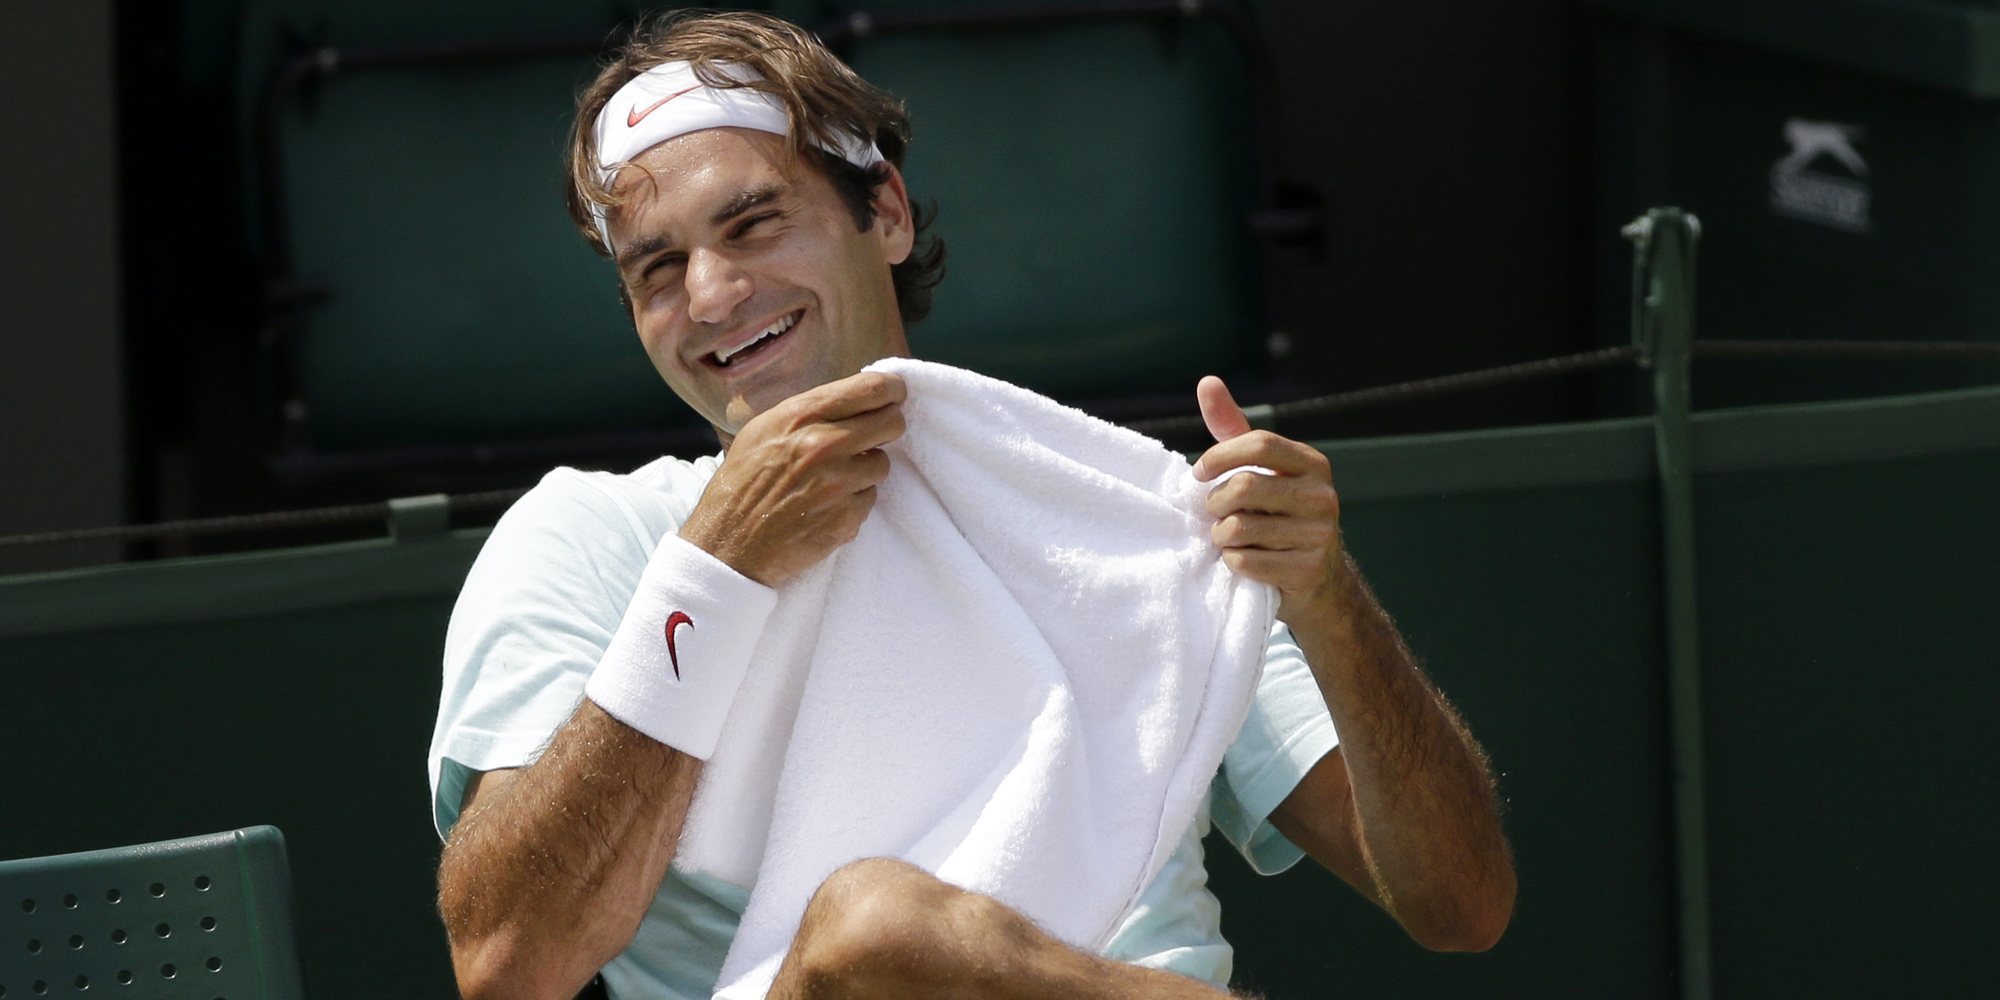 Roger Federer, muy enamorado de su mujer: "Es un sueño tener una relación así"